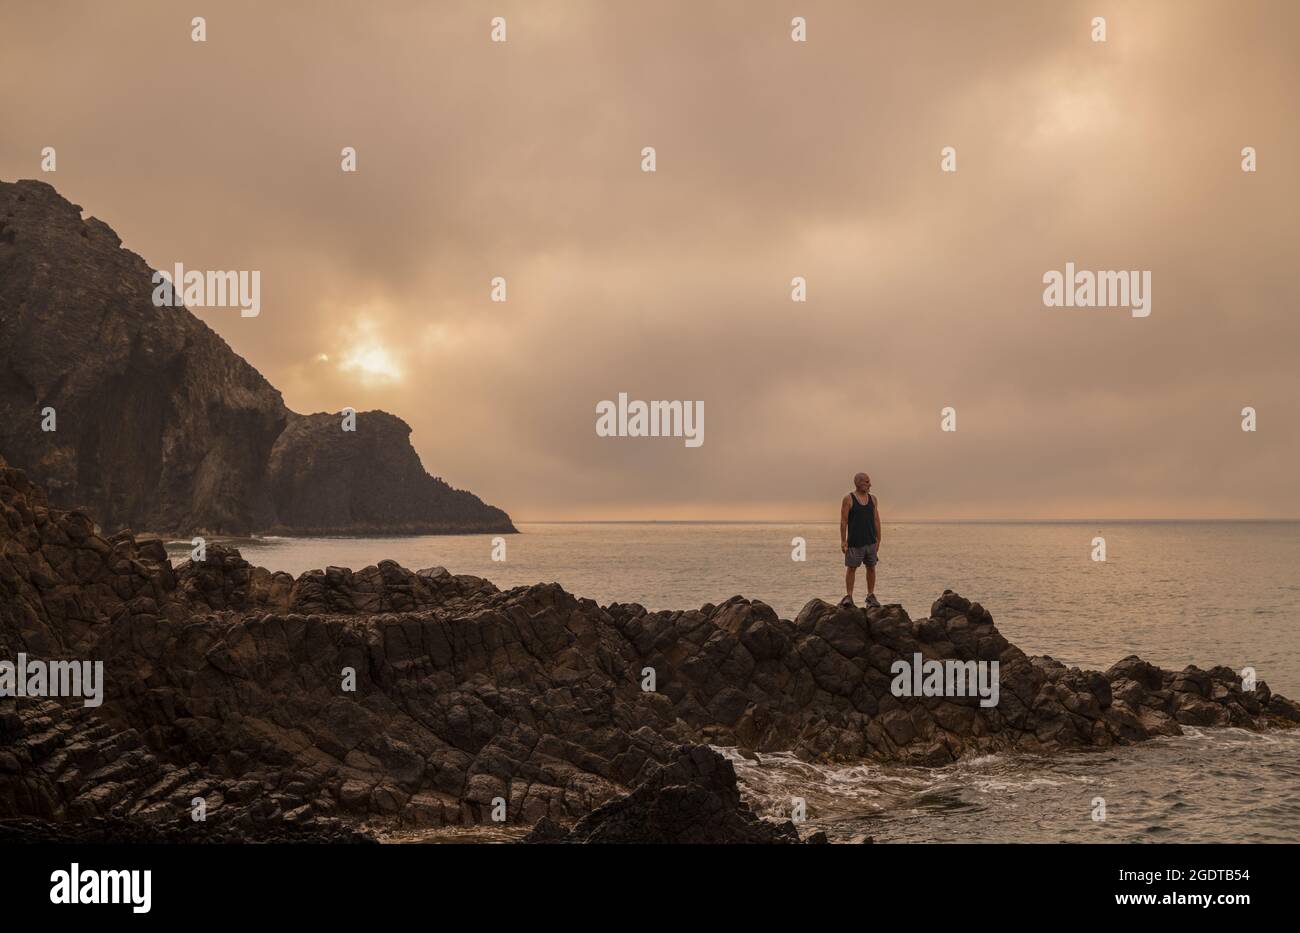 Homme debout sur le rocher et regardant la vue sur la plage pittoresque au lever du soleil Banque D'Images